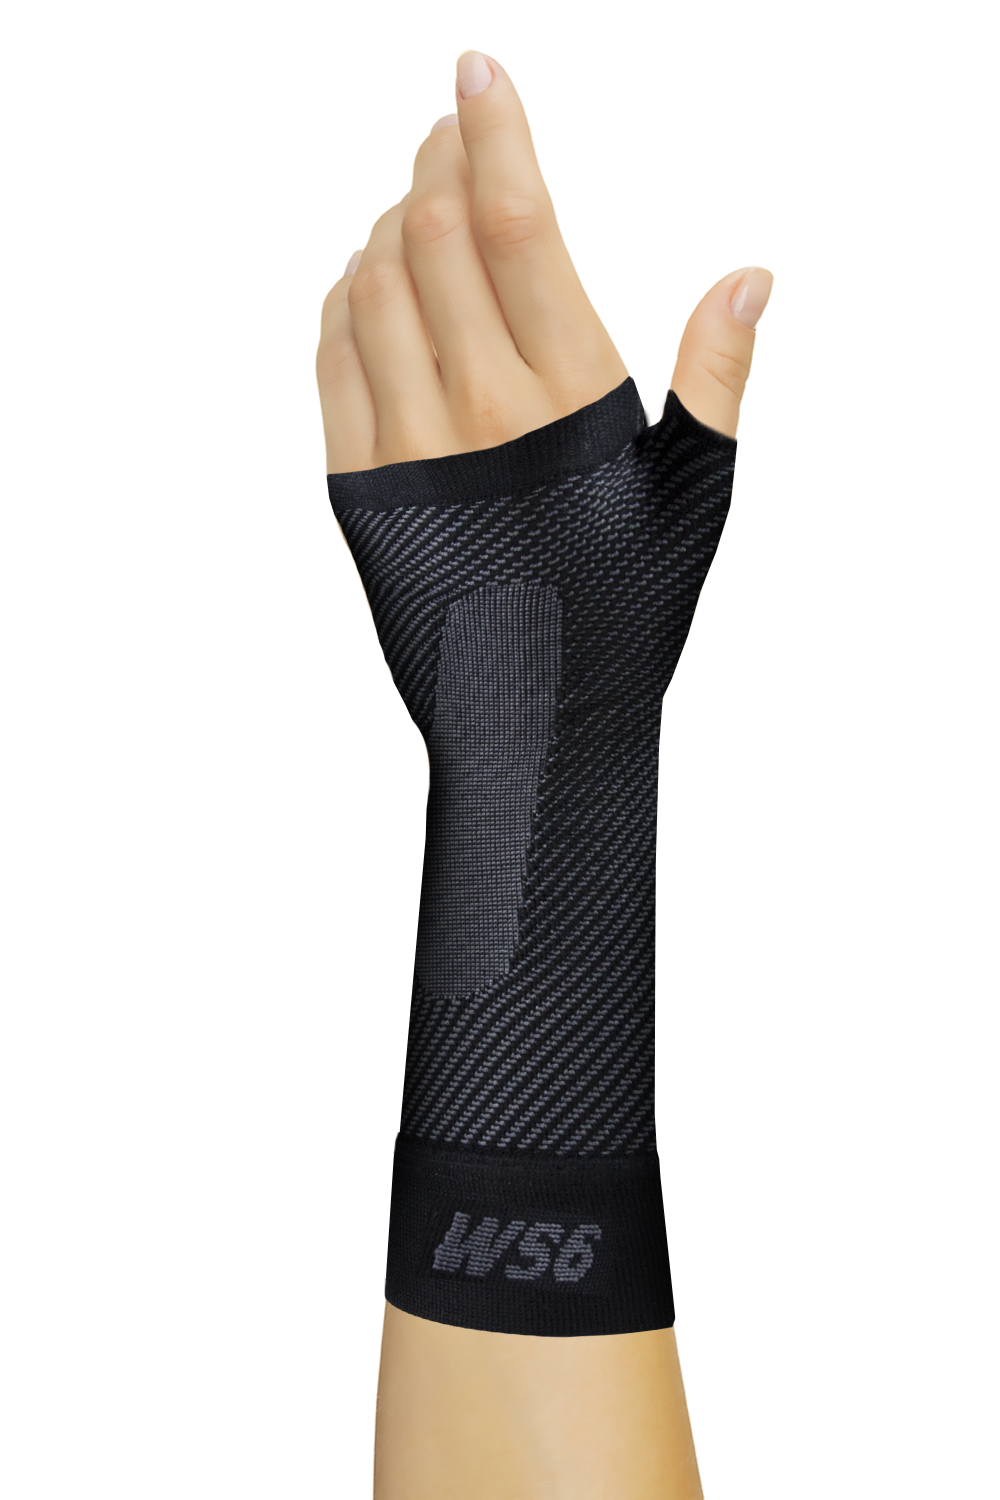 Orthosleeve Ws6 Wrist Sleeve Black Large